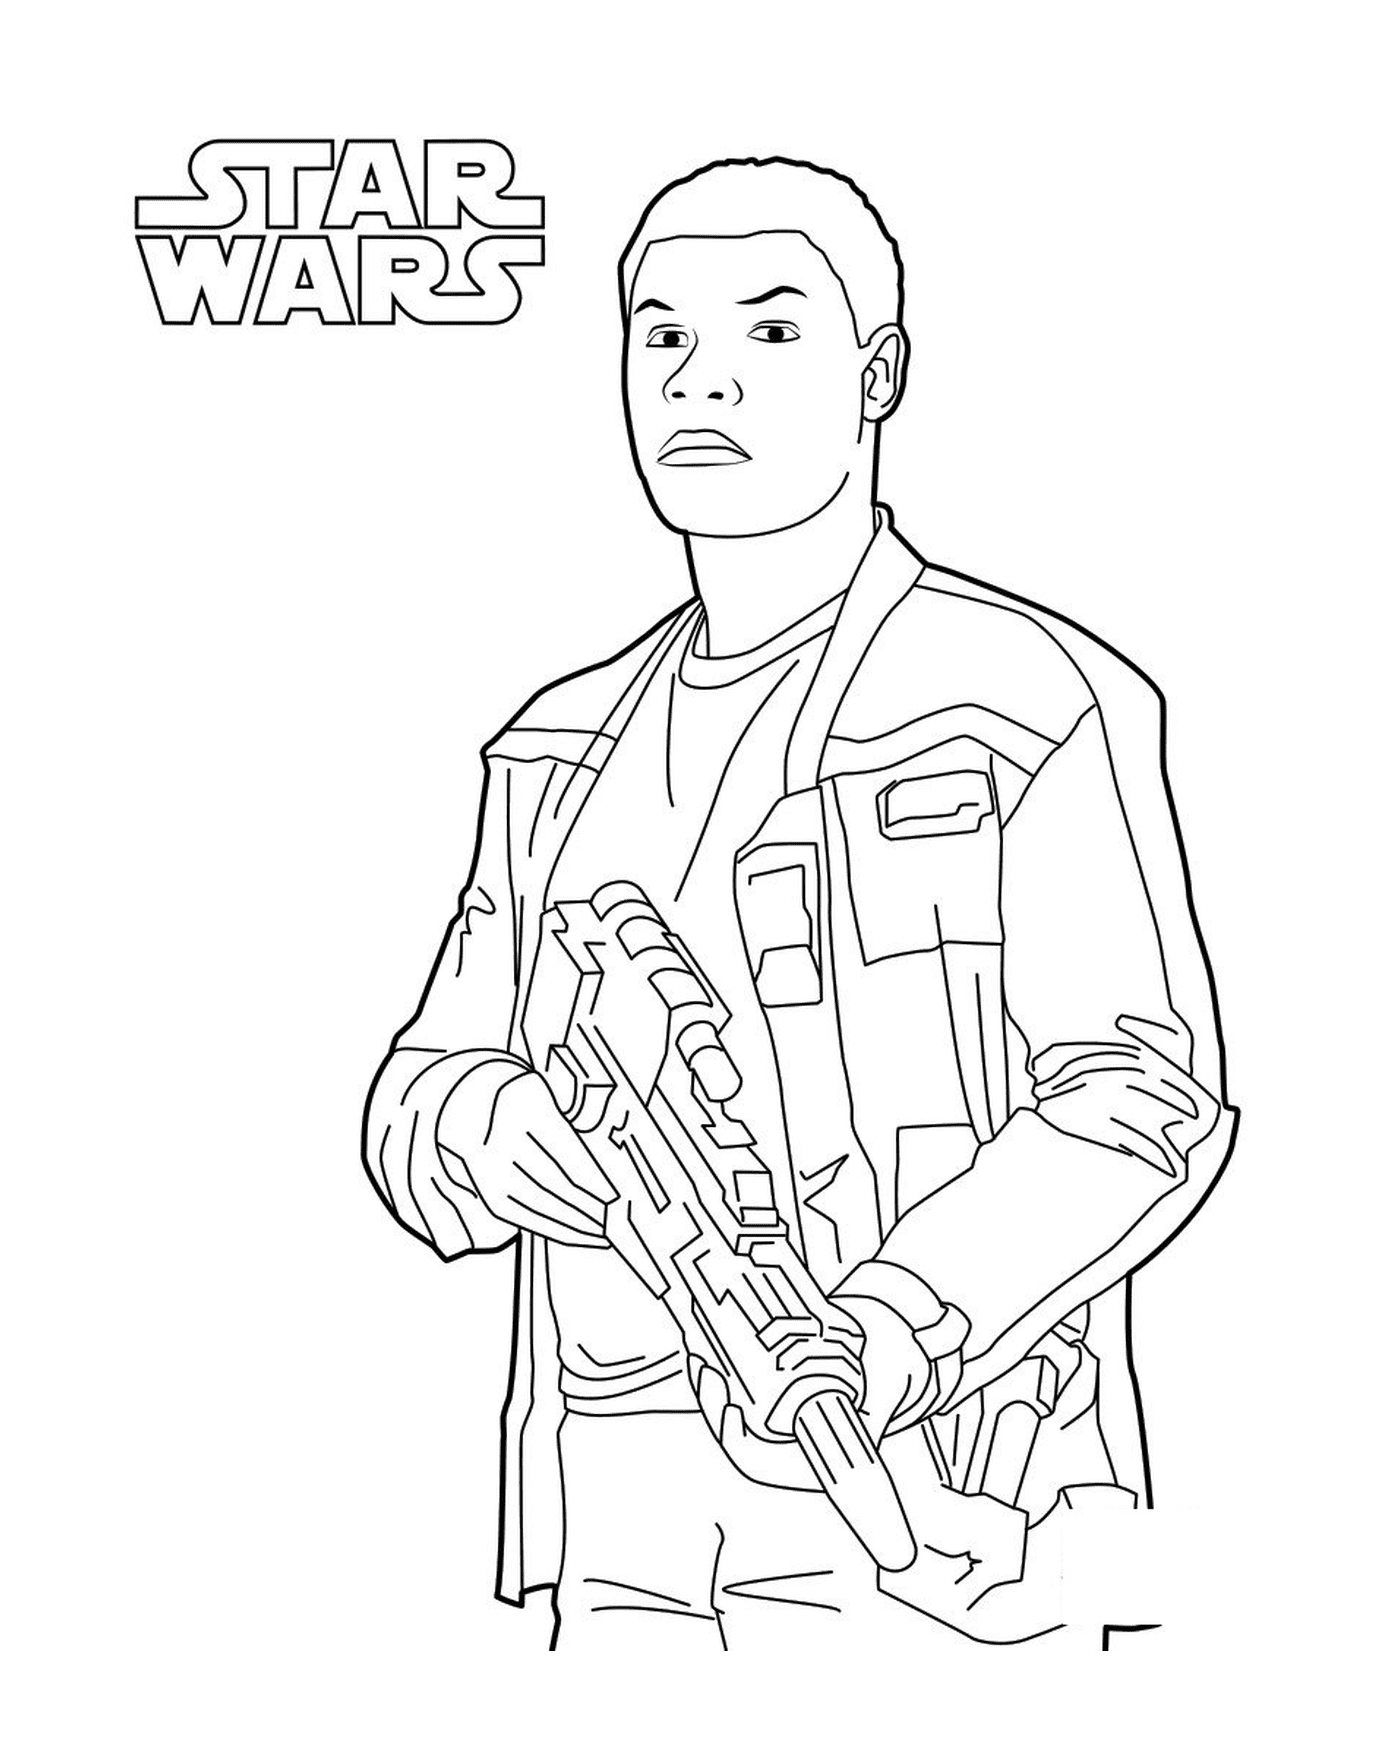   Finn avec un pistolet dans Star Wars 7 